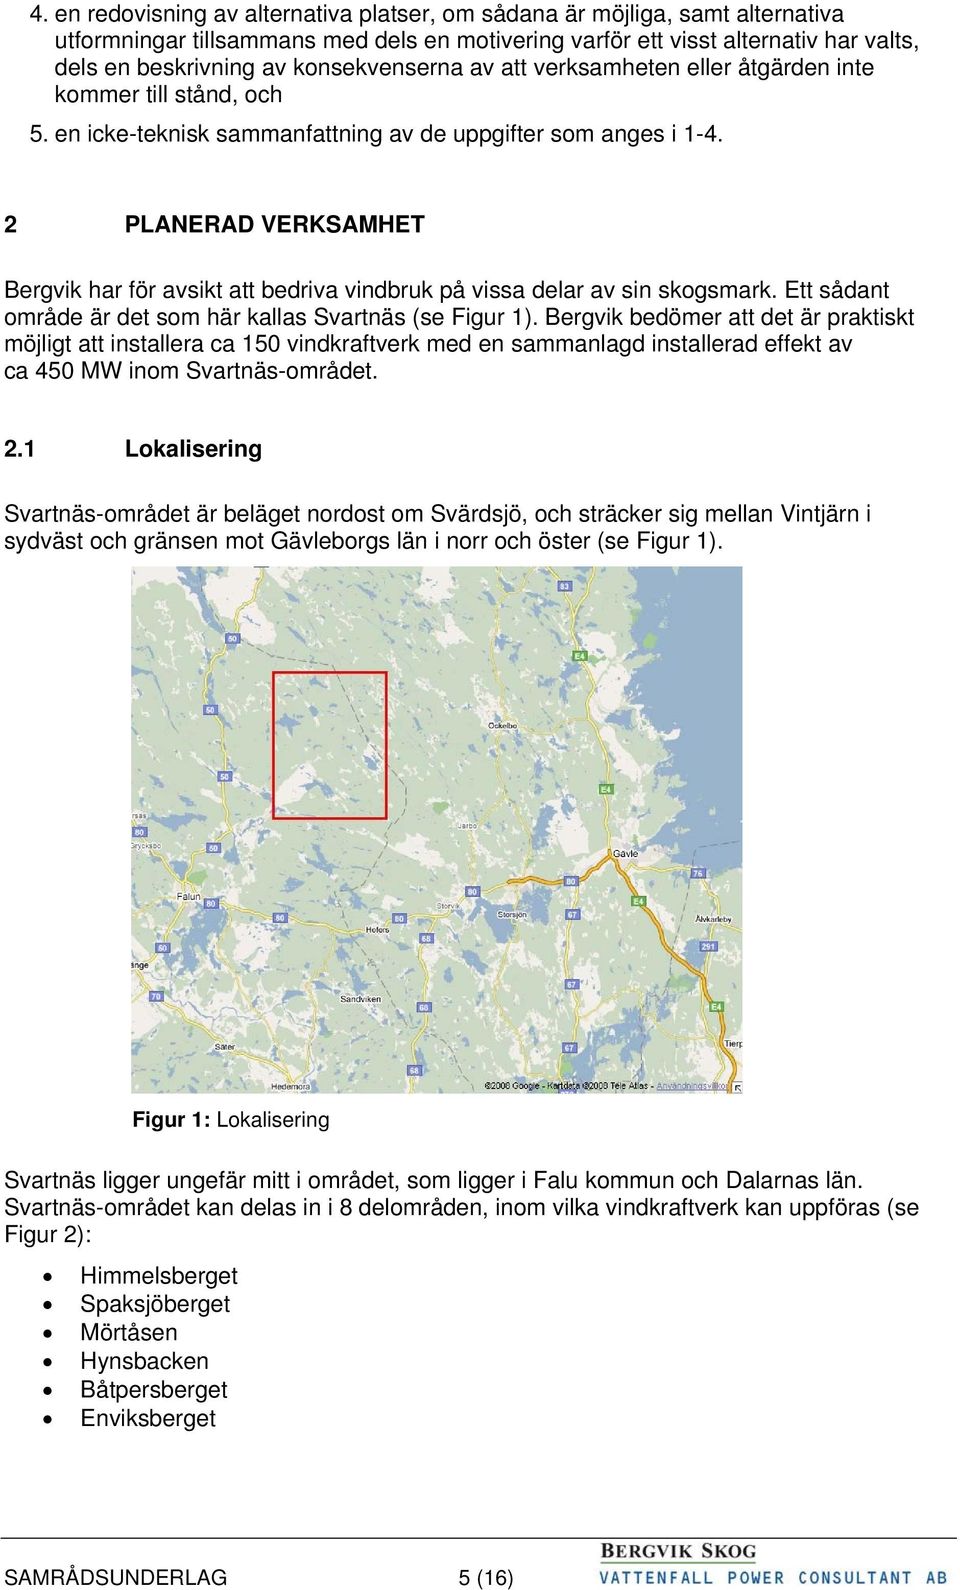 2 PLANERAD VERKSAMHET Bergvik har för avsikt att bedriva vindbruk på vissa delar av sin skogsmark. Ett sådant område är det som här kallas Svartnäs (se Figur 1).